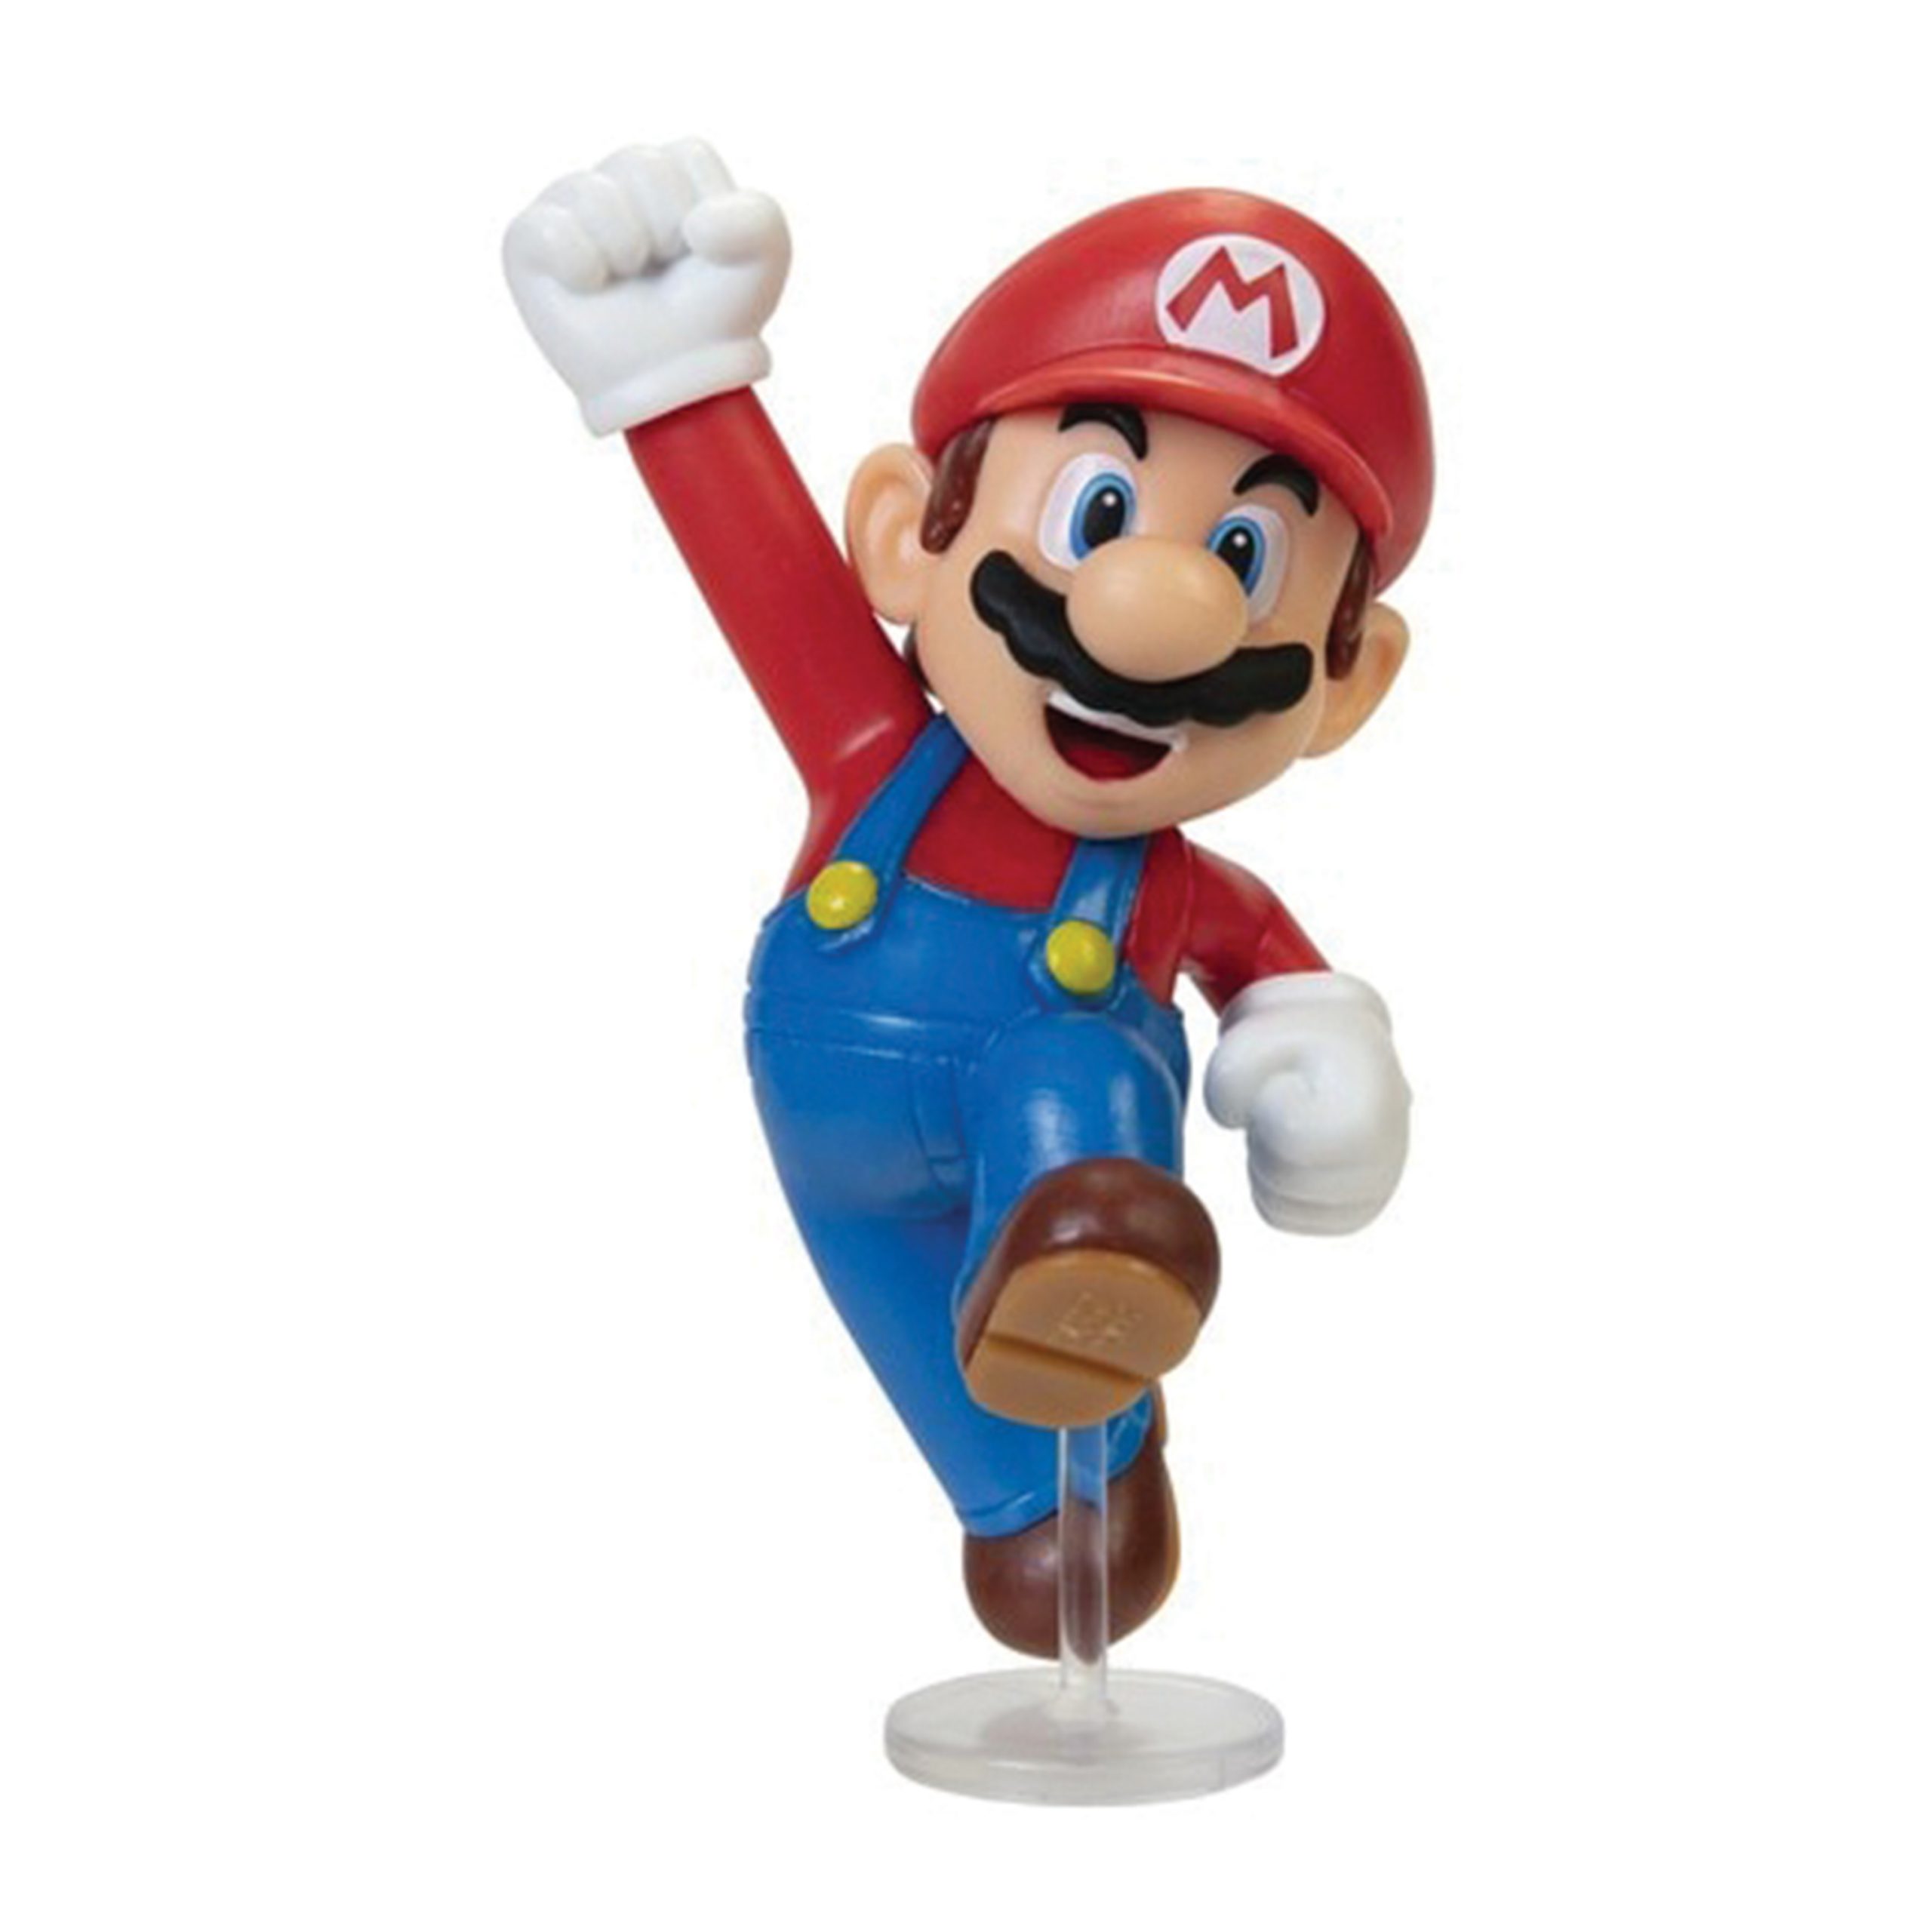 Mario Bros: Dia do personagem mais querido